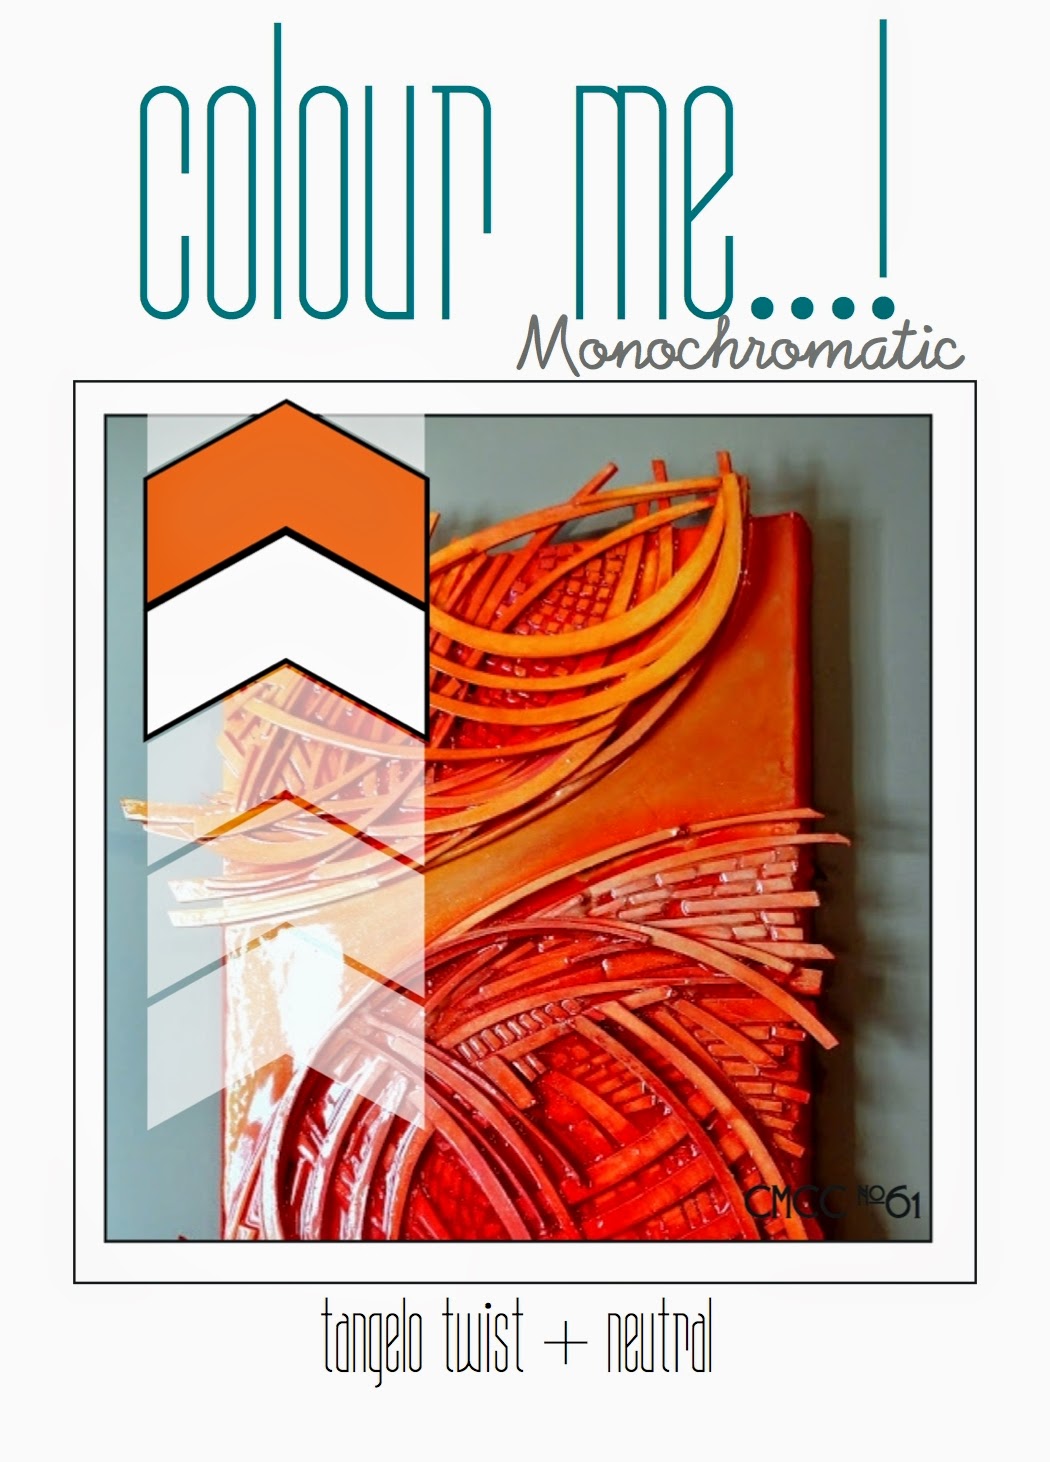 http://colourmecardchallenge.blogspot.com/2015/03/cmcc61-colour-me-monochromatic.html